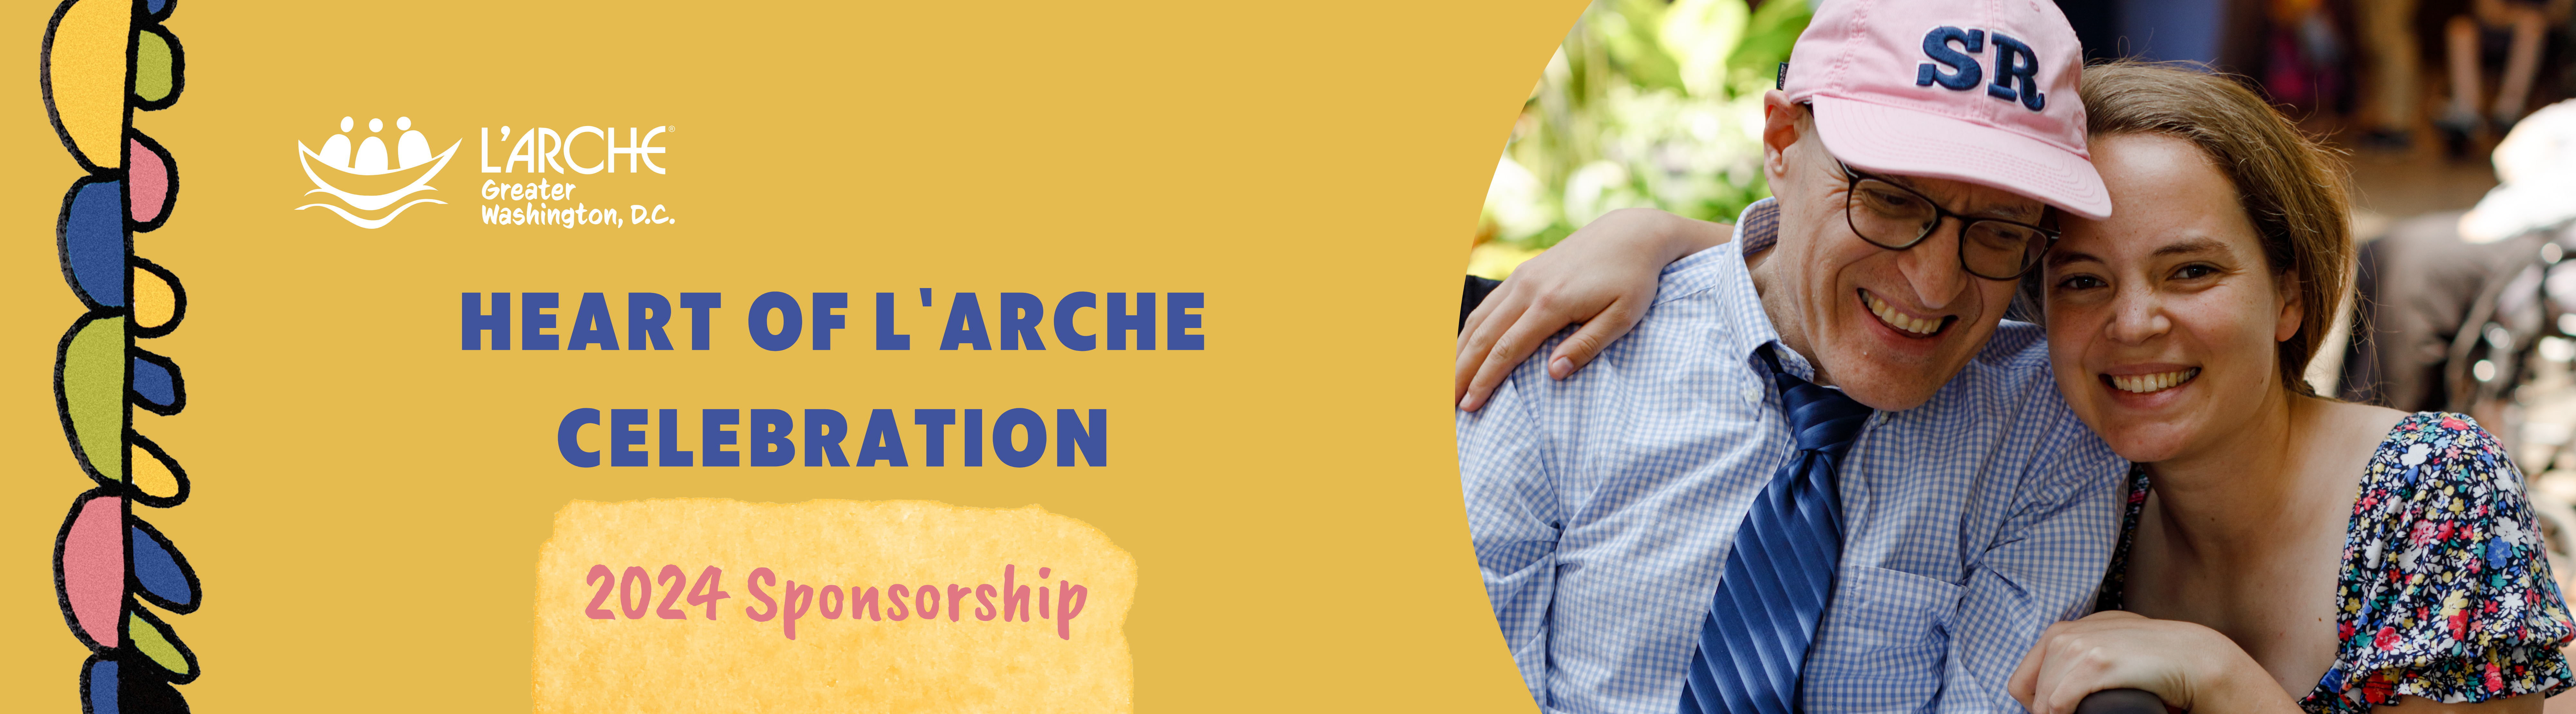 Heart of L'Arche Celebration: 2024 Sponsorship